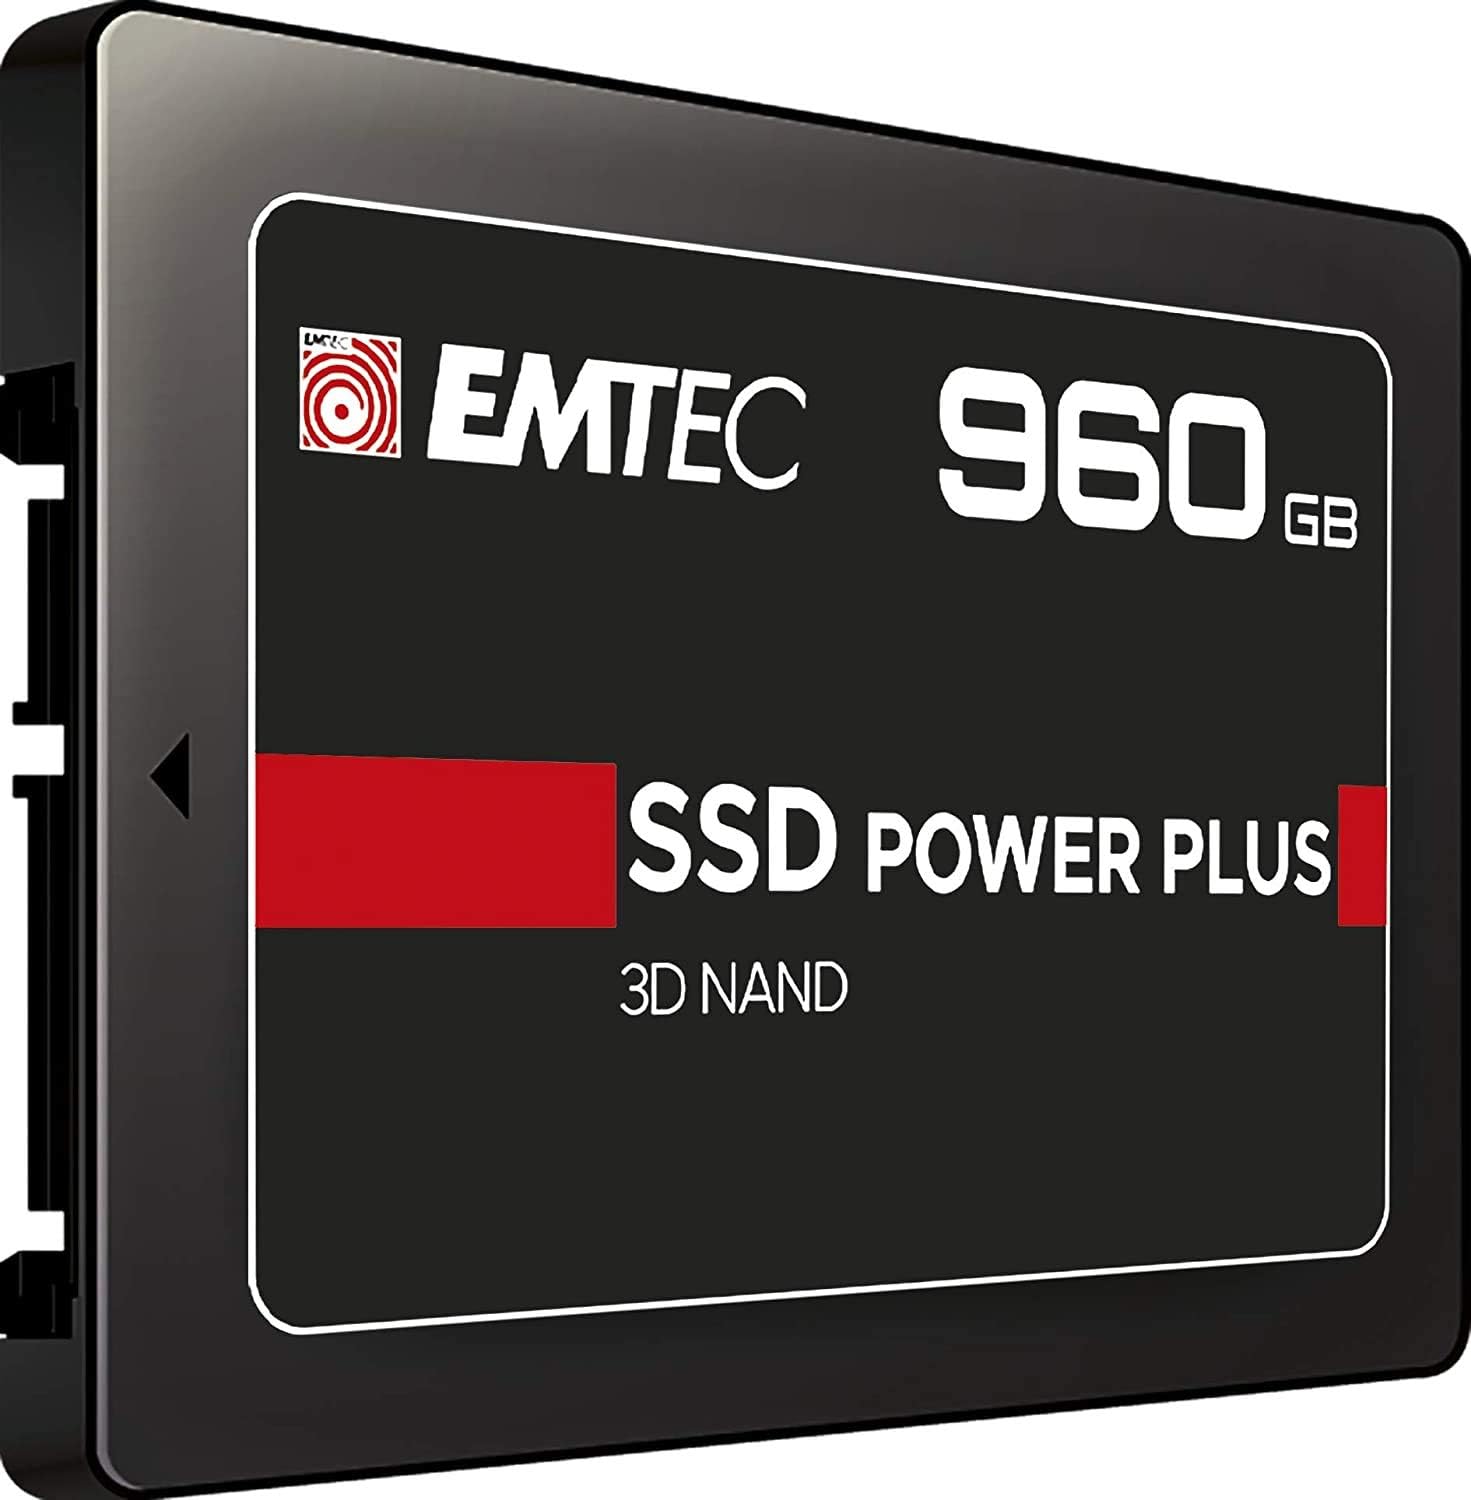 SSDEMTC X150 POWER PLUS 960GB 2,5